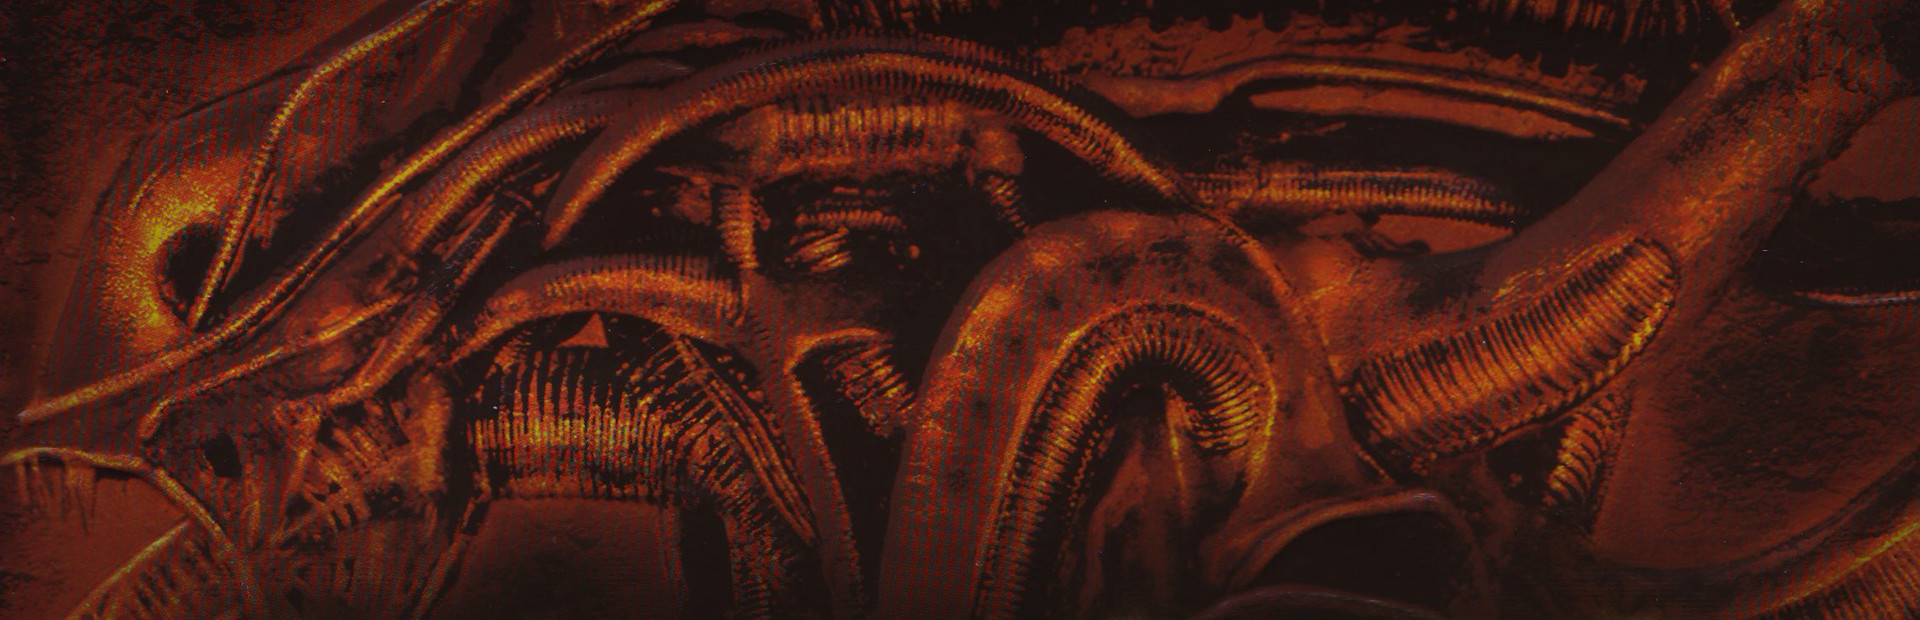 Aliens versus Predator Classic 2000 cover image